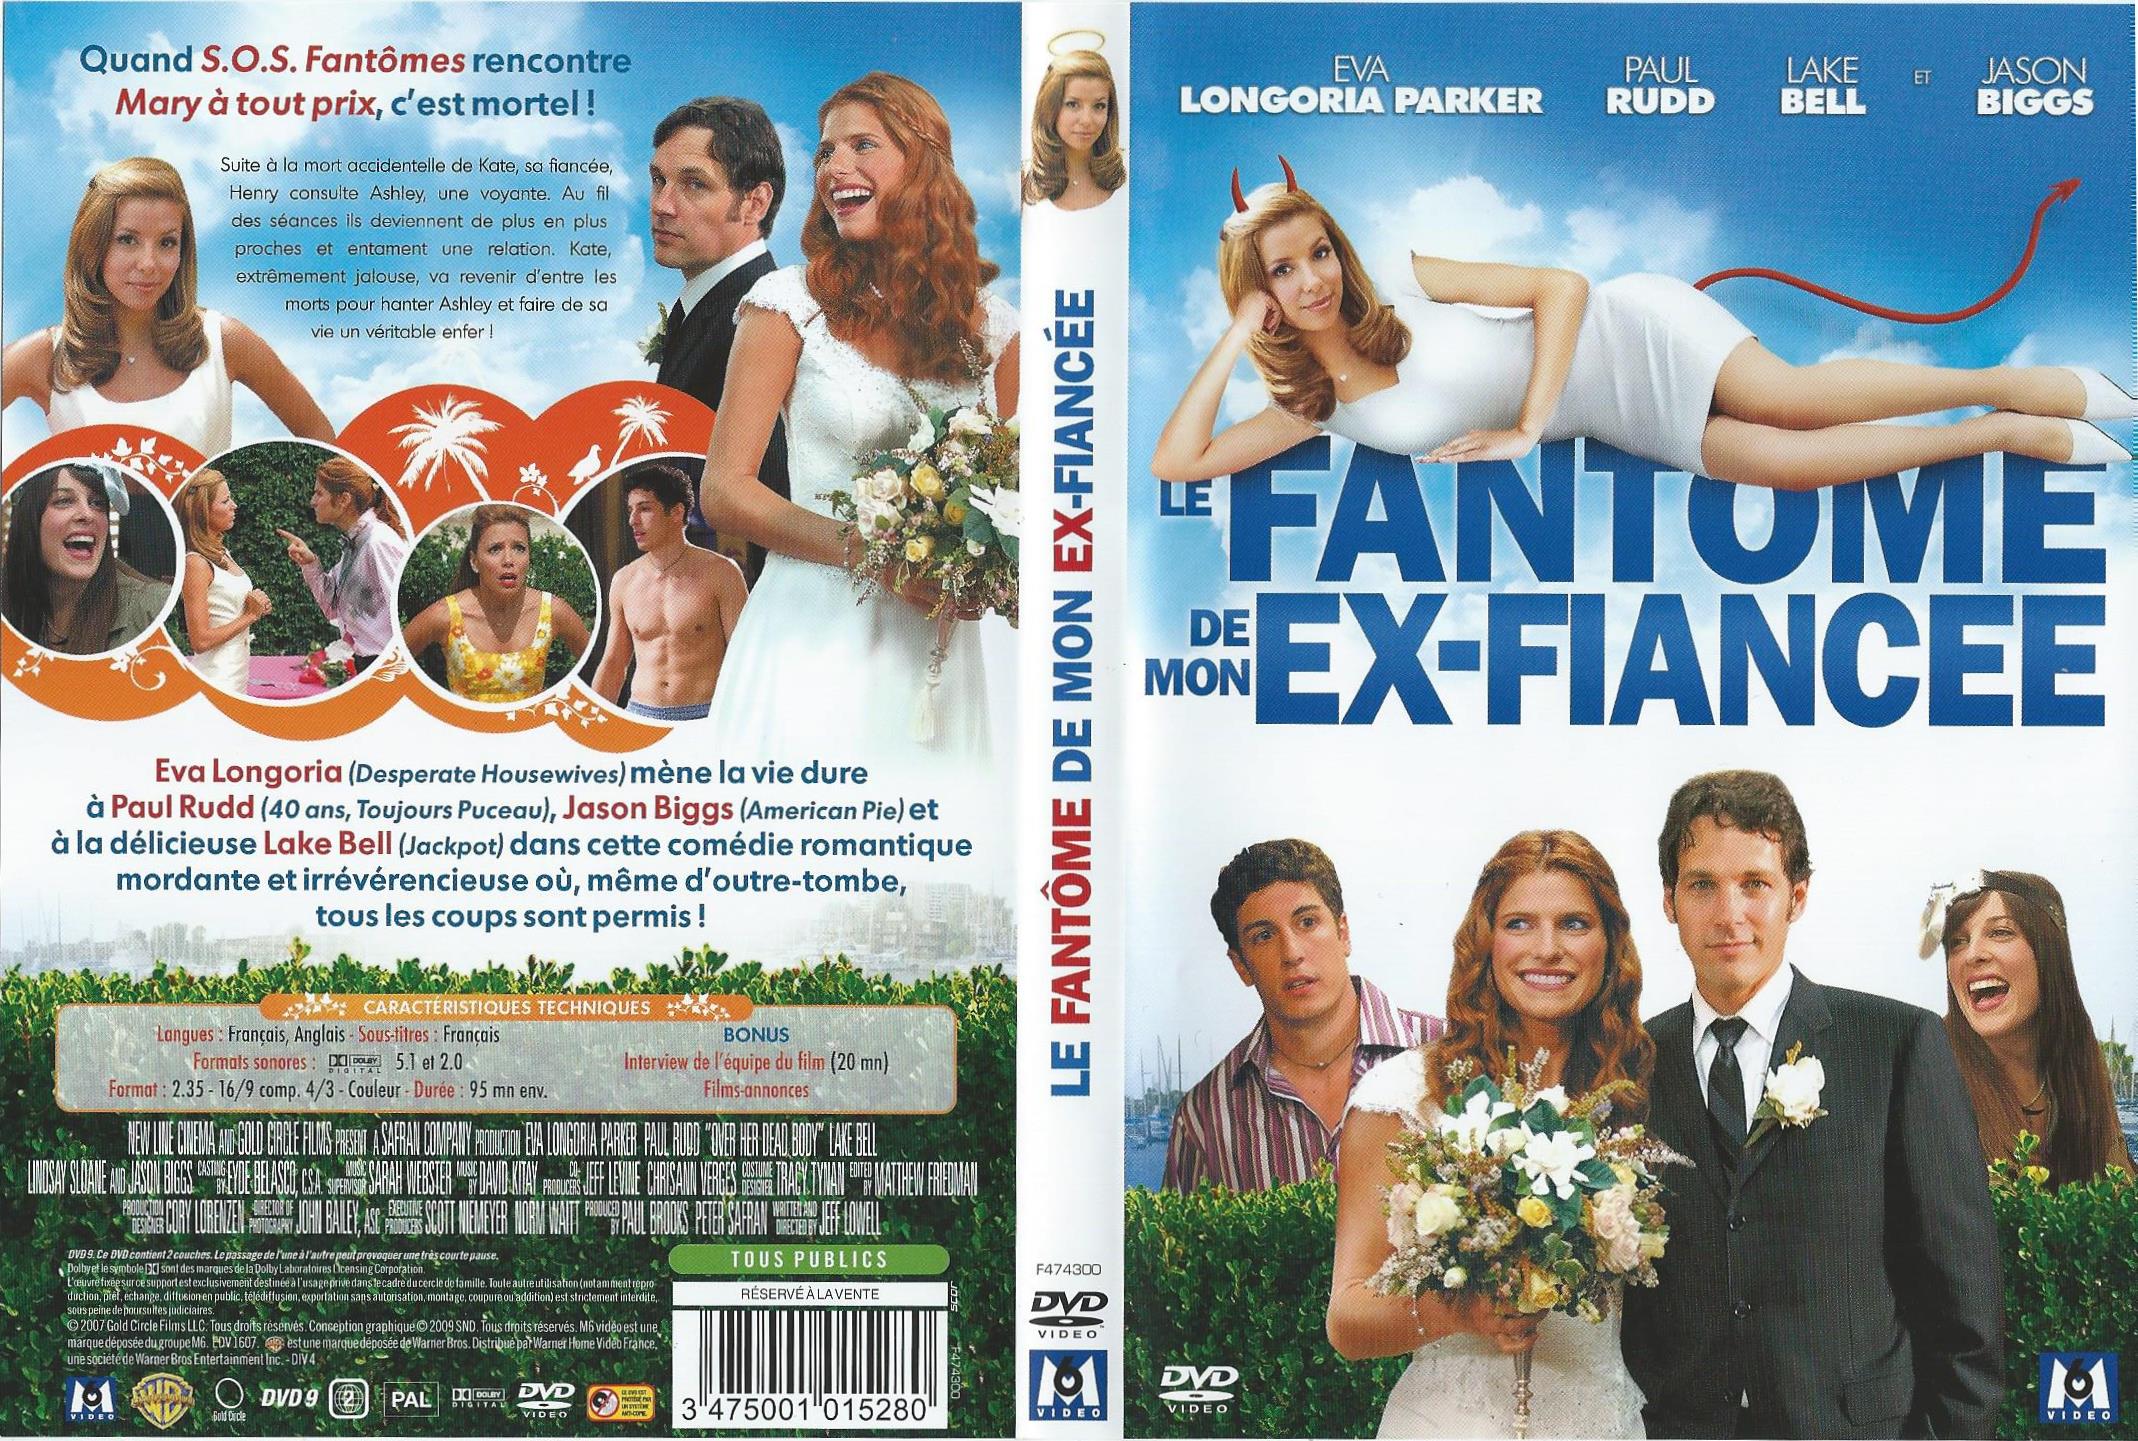 Jaquette DVD Le Fantme de mon ex-fiance